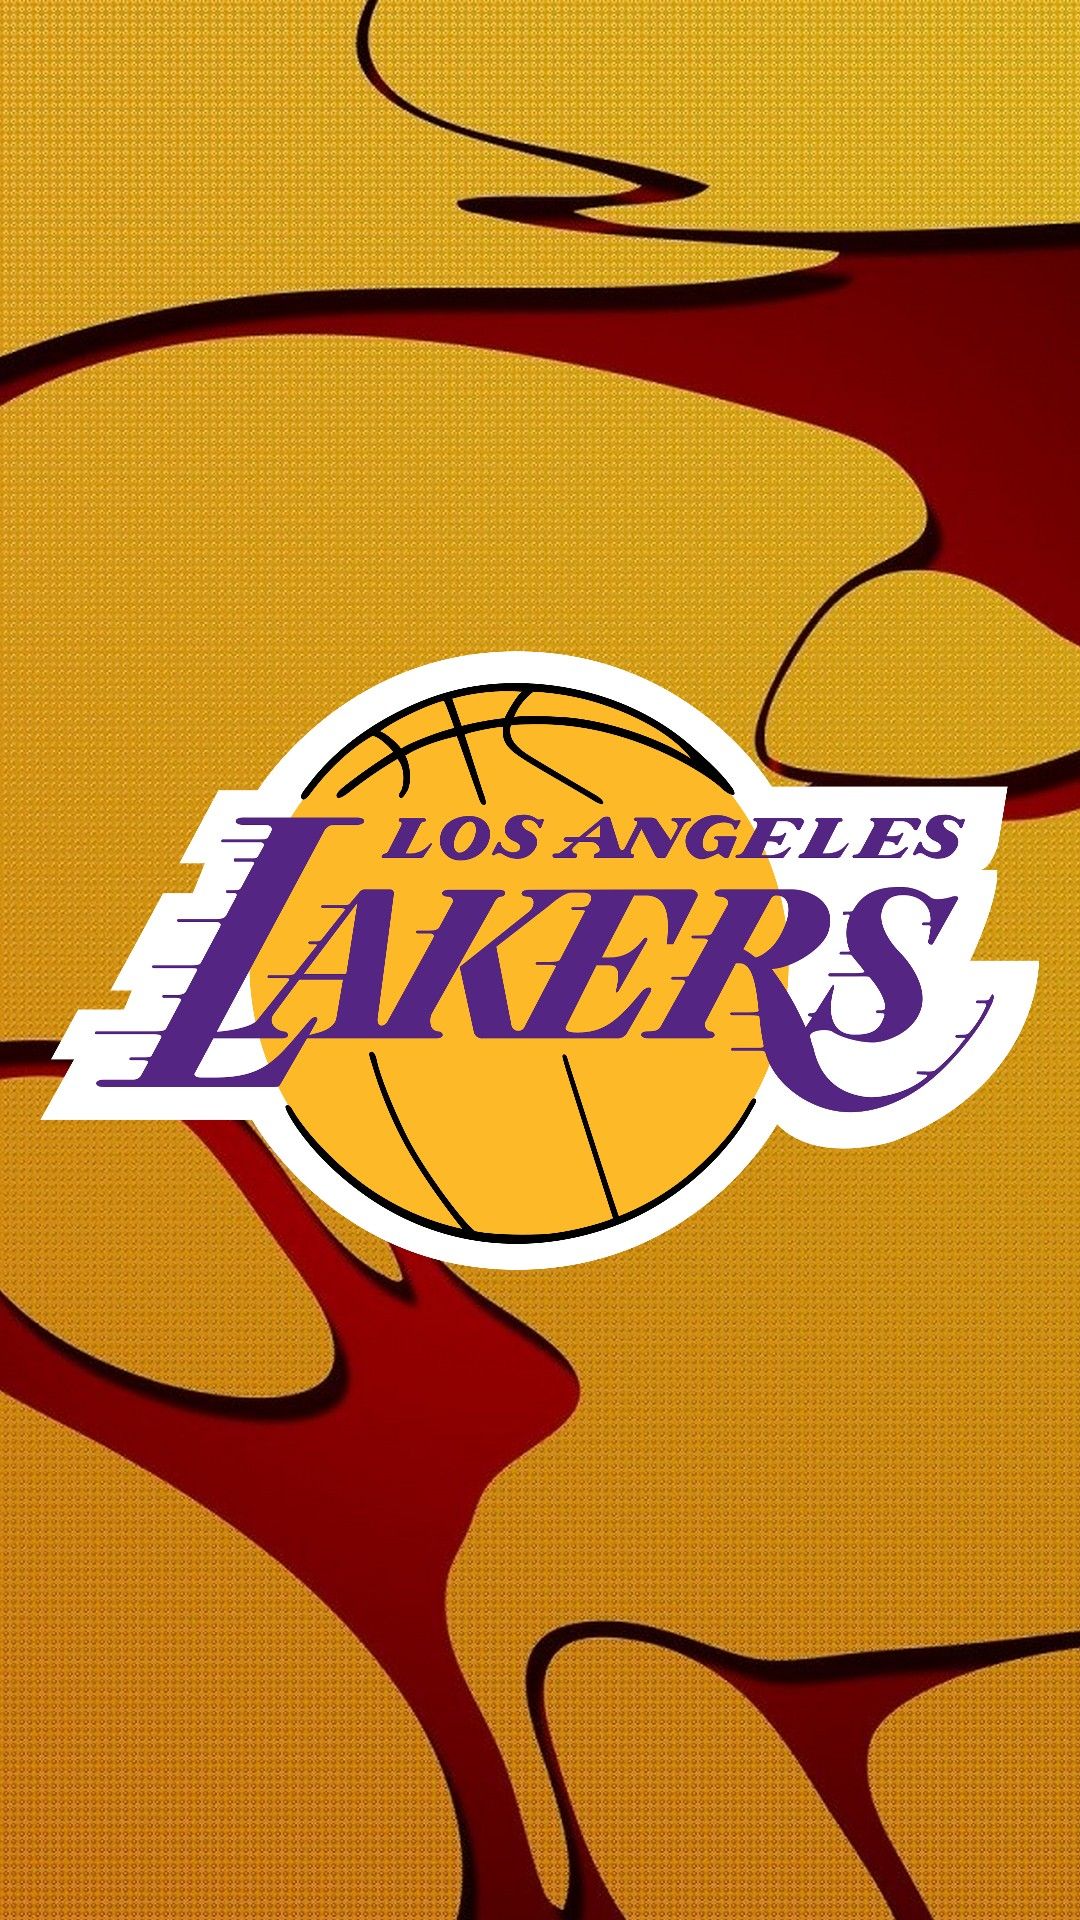 Free download LA Lakers iPhone 6s Plus Wallpaper 2020 NBA iPhone